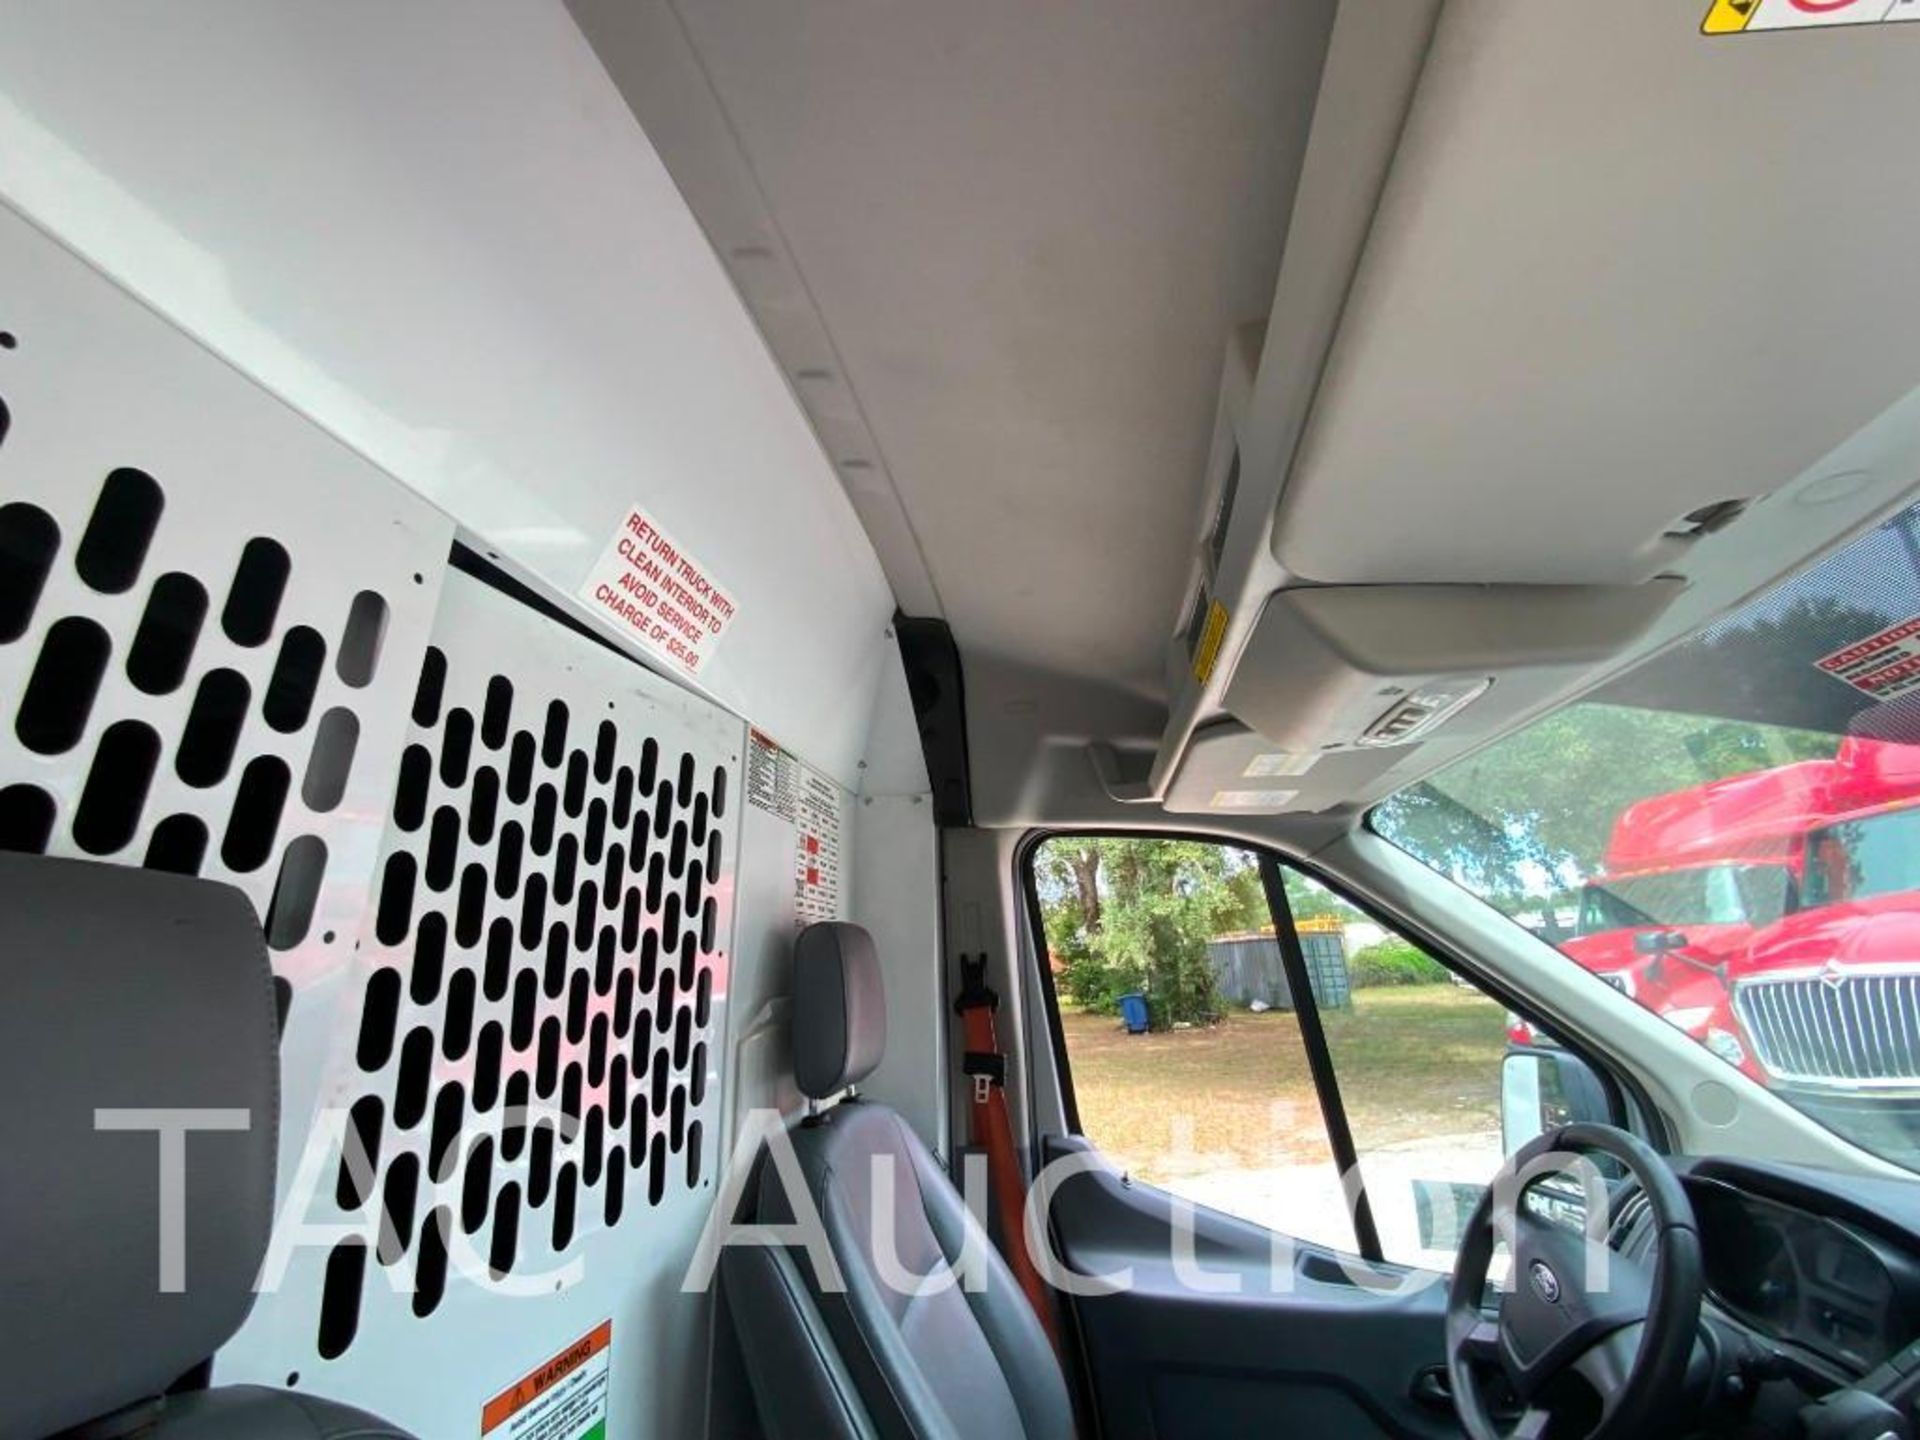 2019 Ford Transit 150 Cargo Van - Image 18 of 54